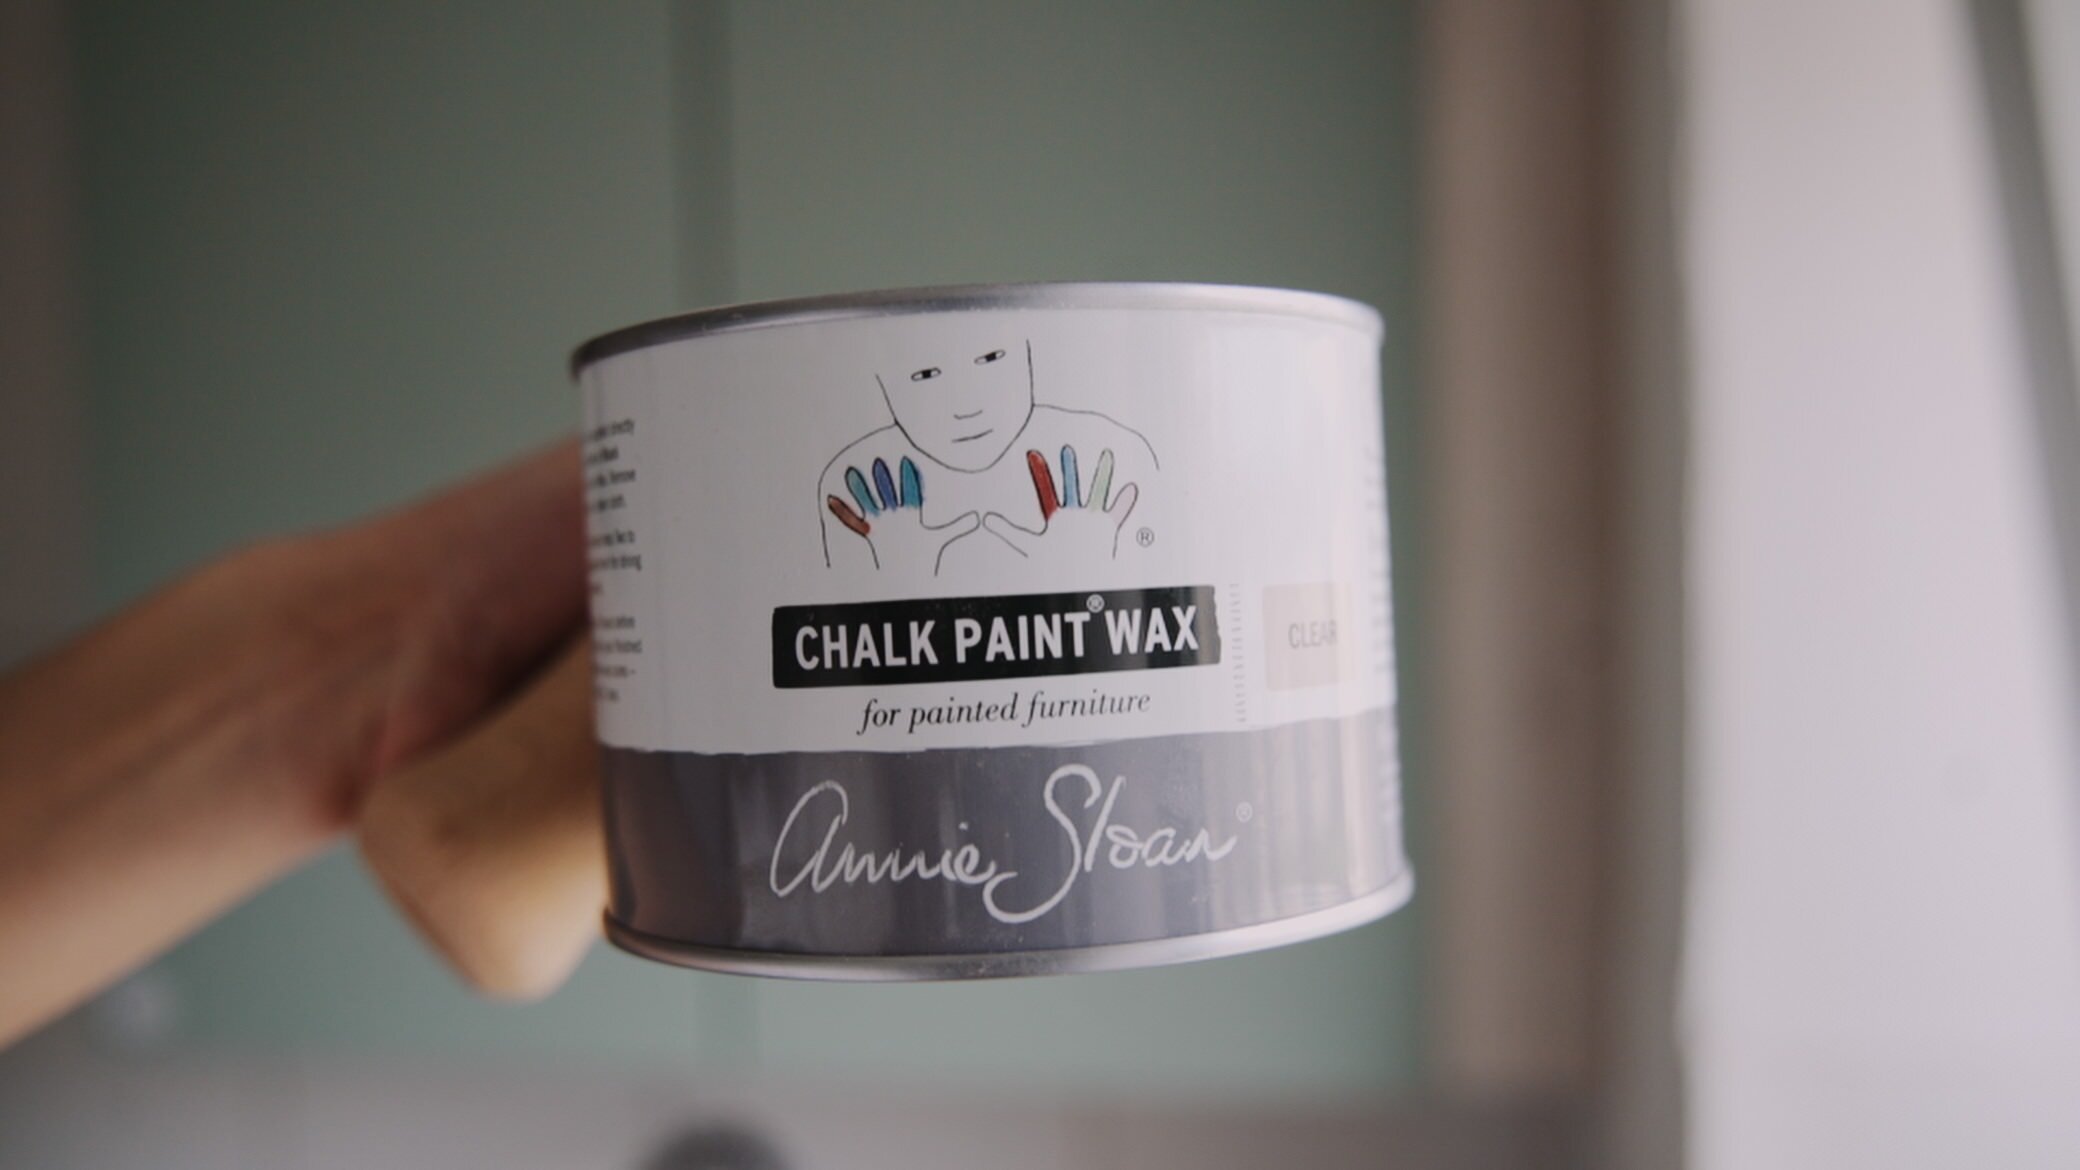  Khi sơn đã khô thì dùng Wax để hoàn tất và bảo vệ. Giữ lớp sơn đẹp, bền màu và cũng để chống bẩn, dễ lau dọn tủ hơn.  http://www.wohnschwester.de/annie-sloan-chalk-paint-wachs-klar-22584.html 